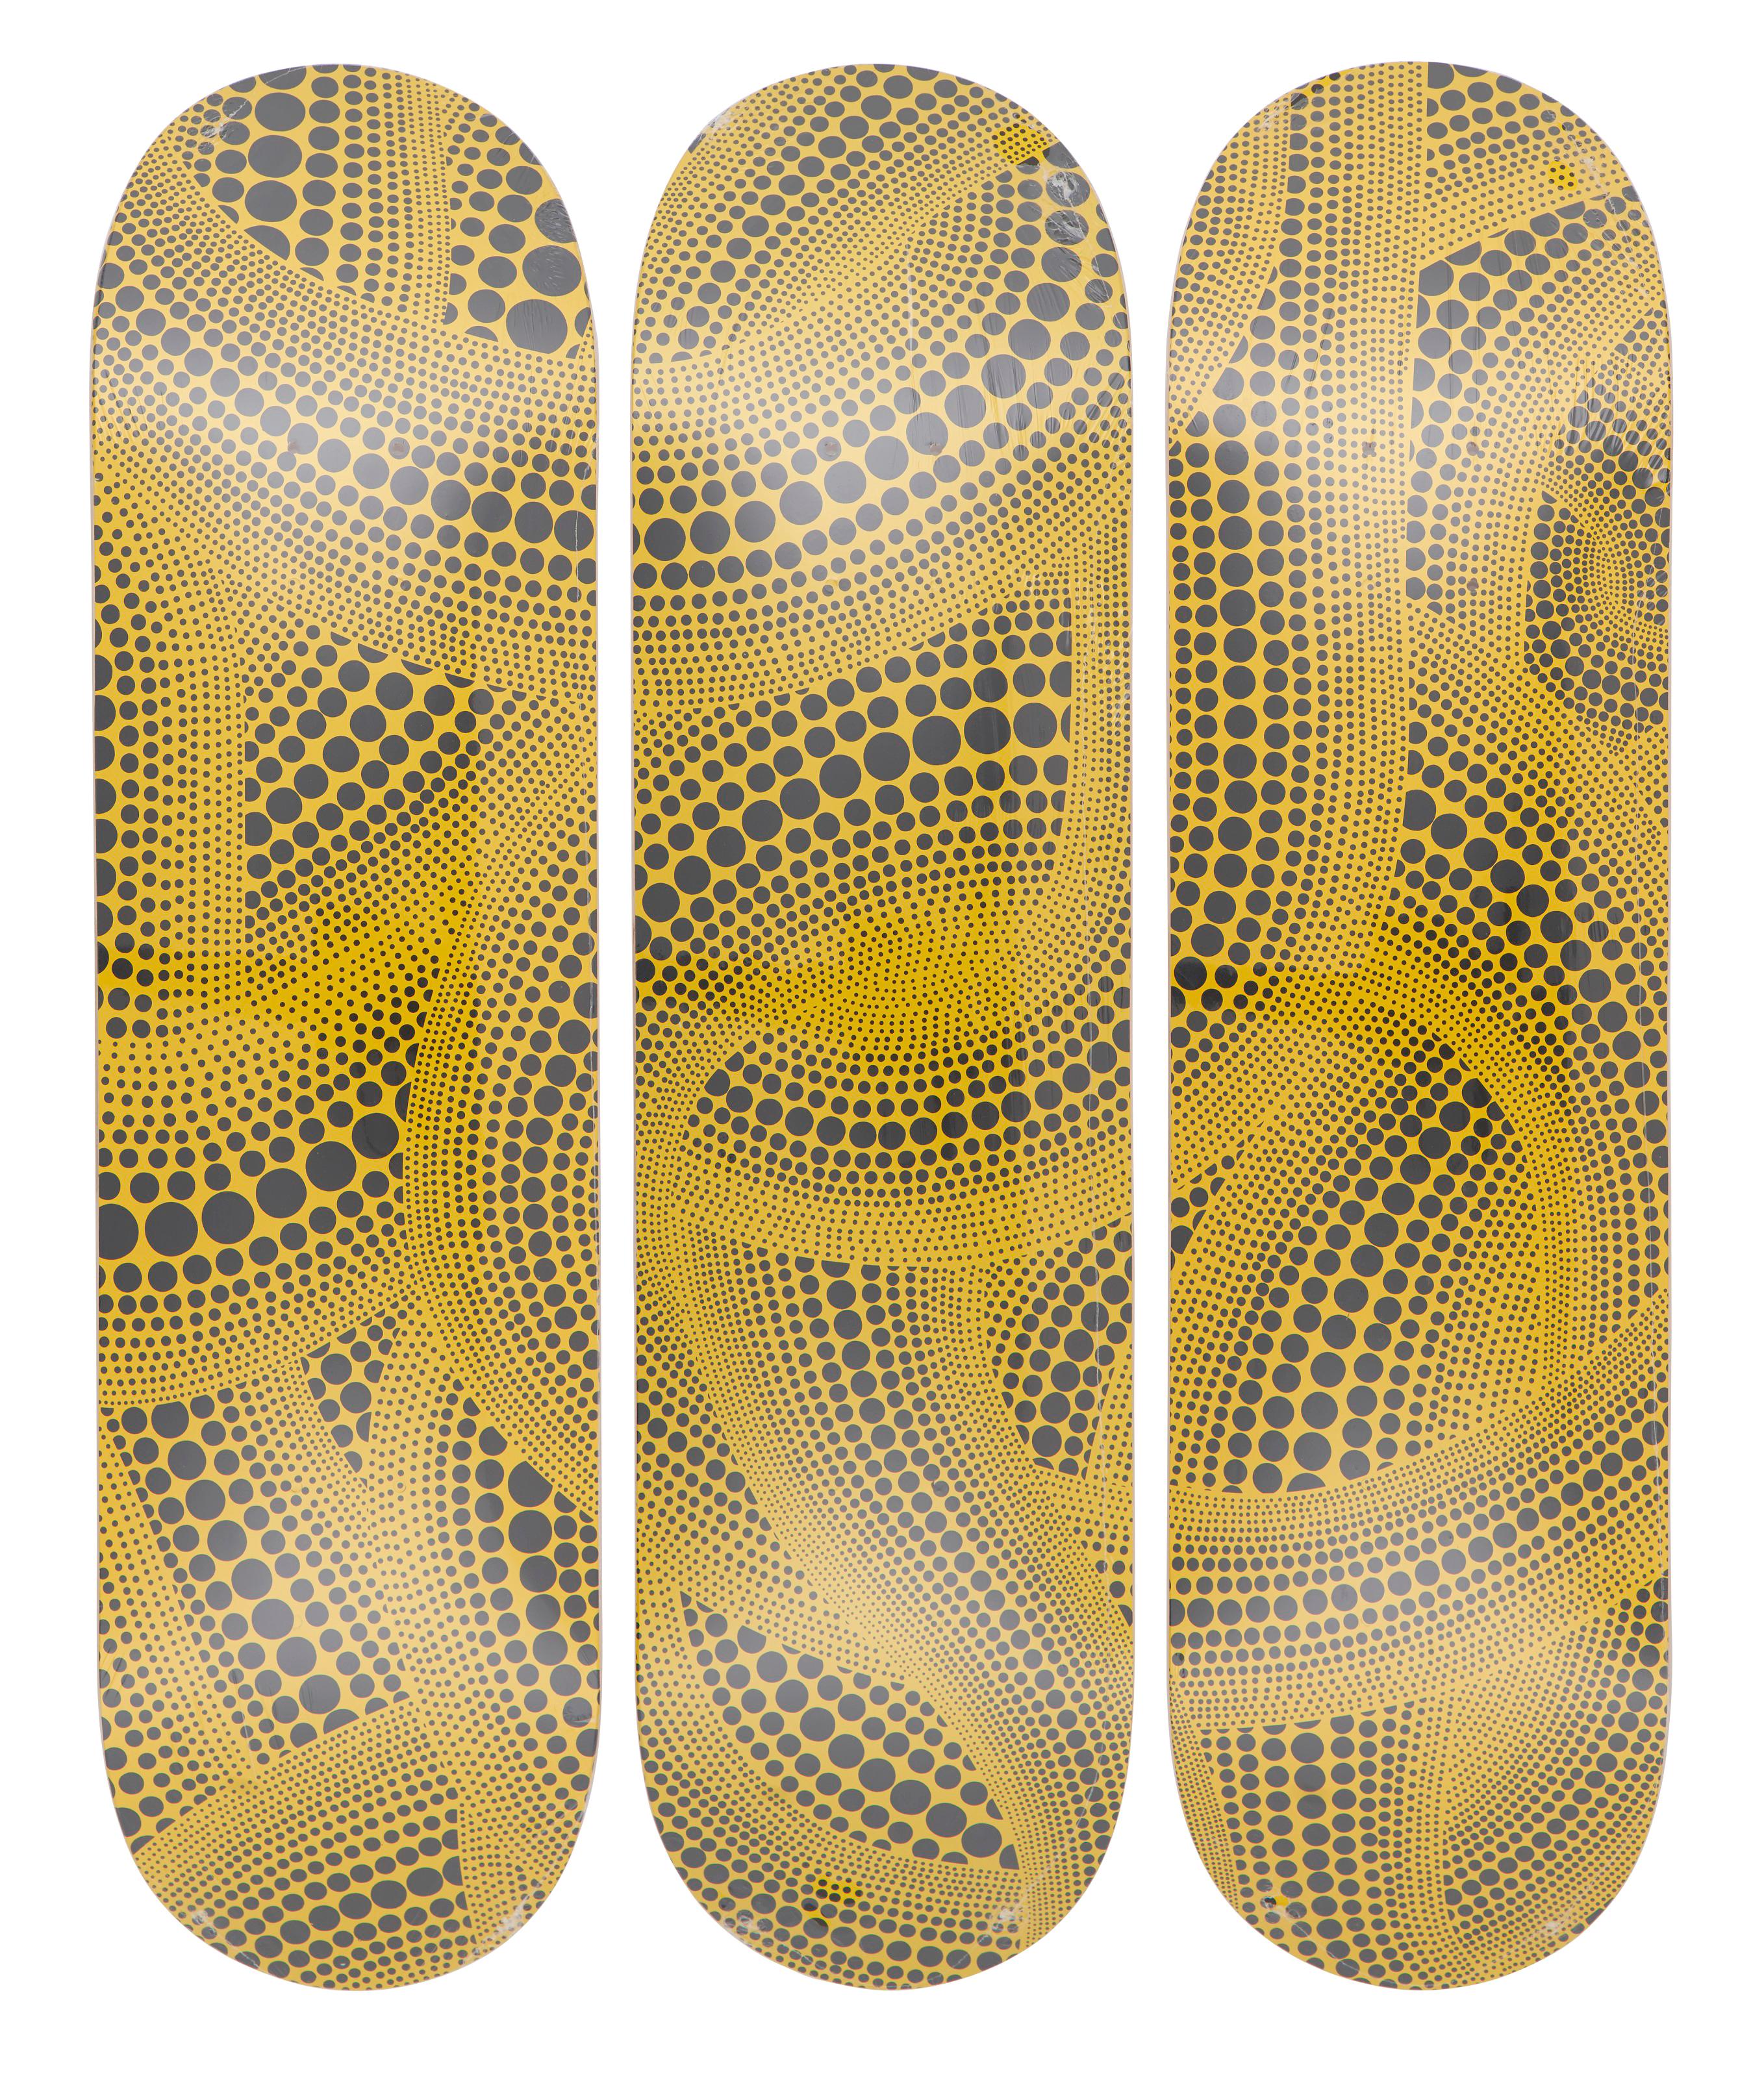 Yellow Trees skateboard set of 3 - Art by Yayoi Kusama